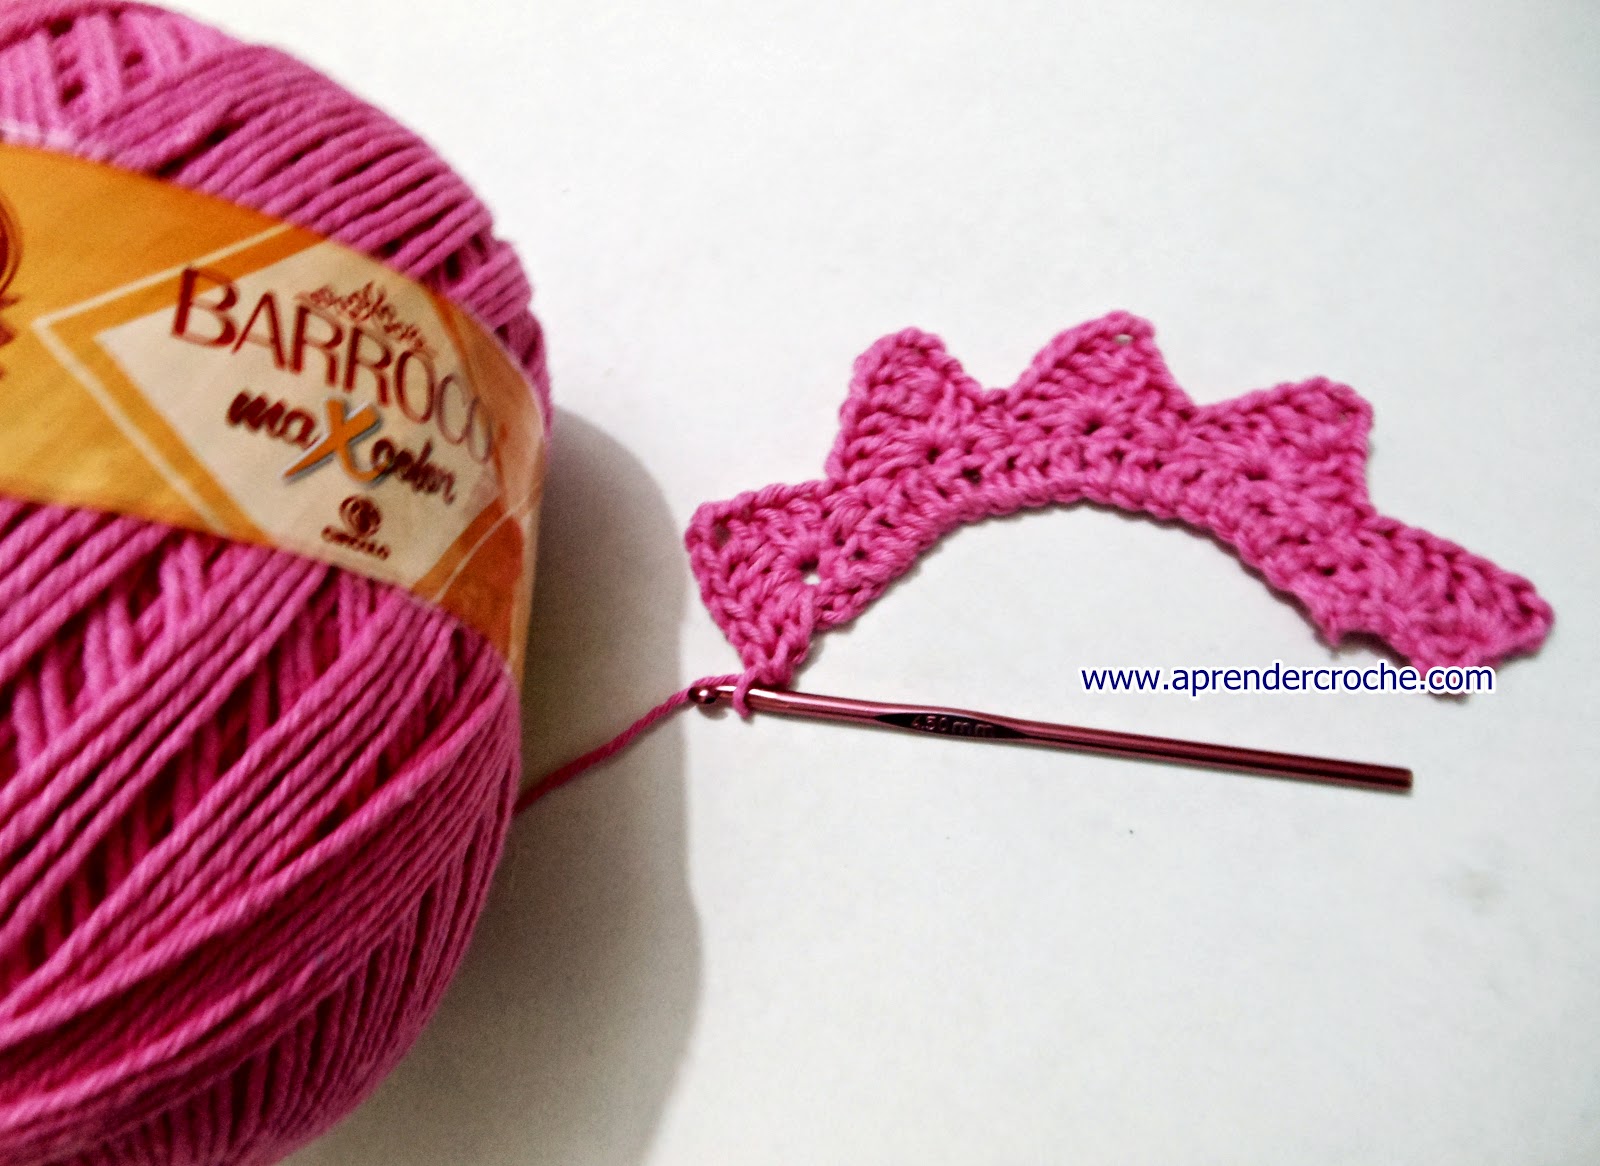 barrados croche rosa maxcolor prosperidade edinir-croche blog aprender croche dvd